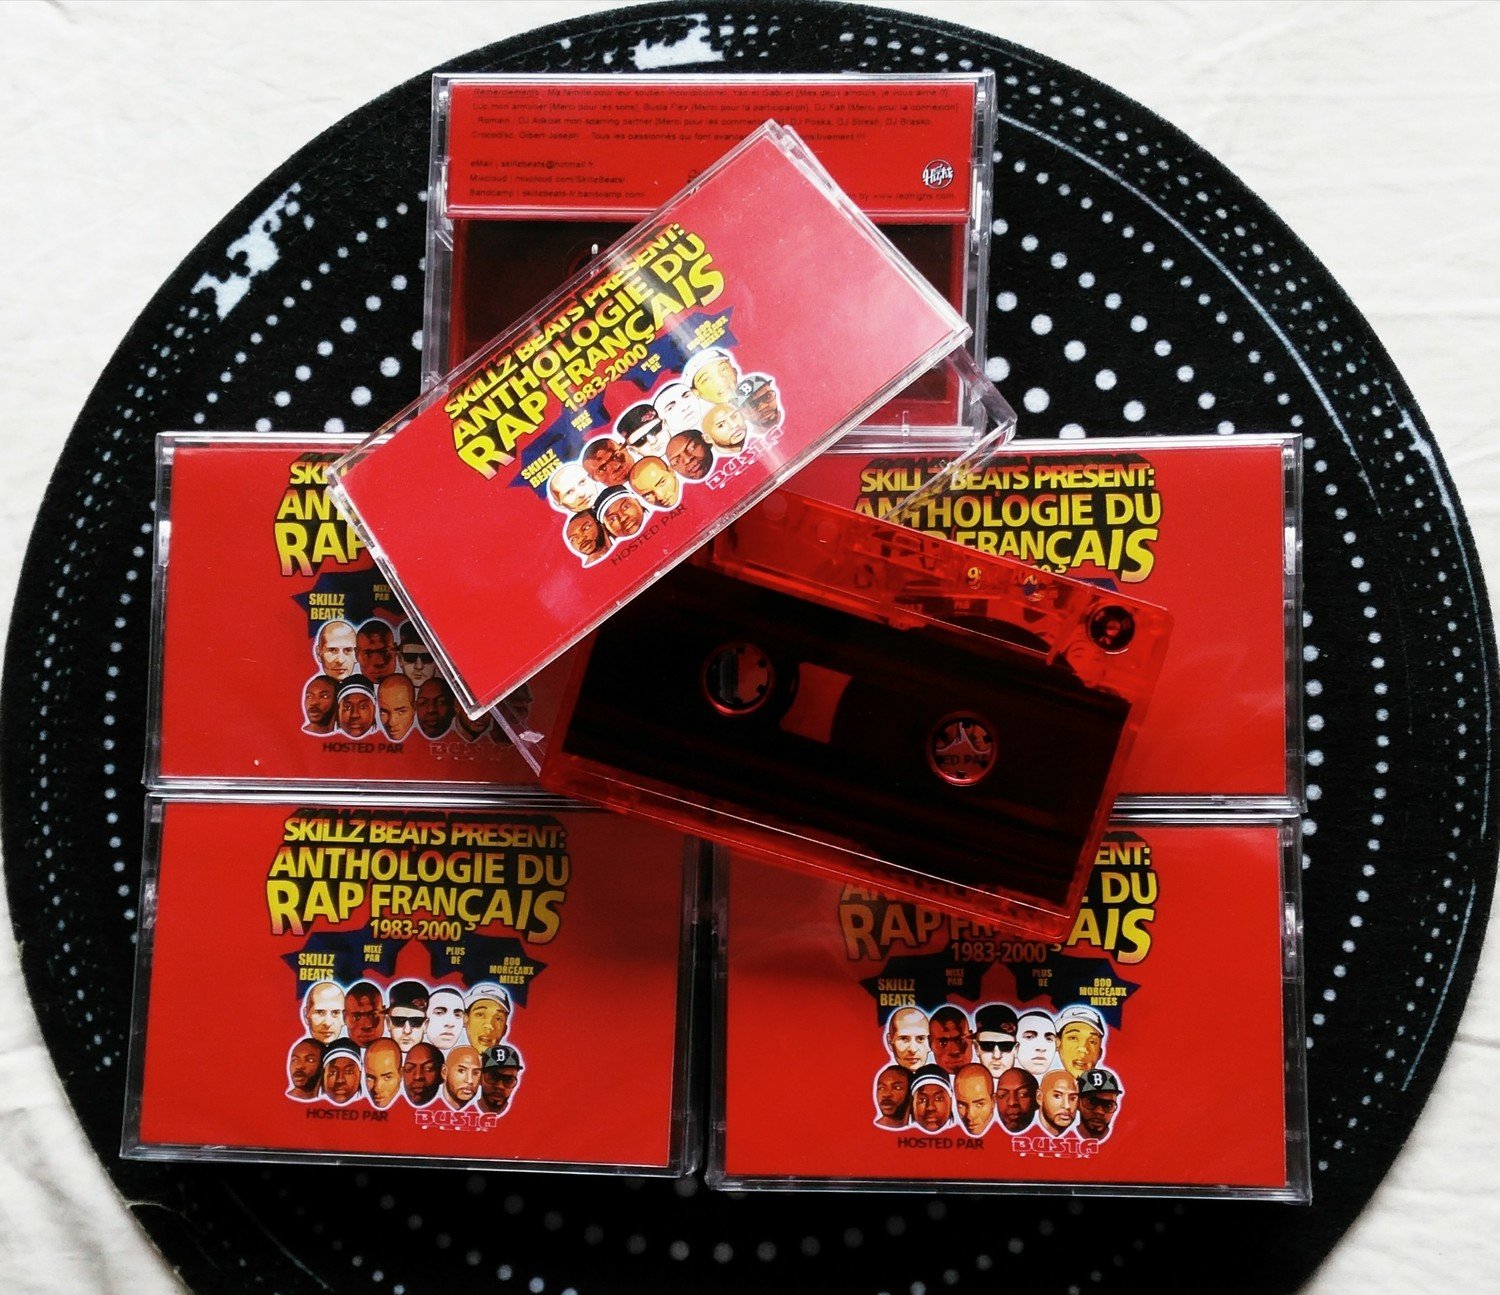 [Cassette] "SKILLZ BEATS present: ANTHOLOGIE DU RAP FRANÇAIS" hosted by BUSTA FLEX (audio tape)